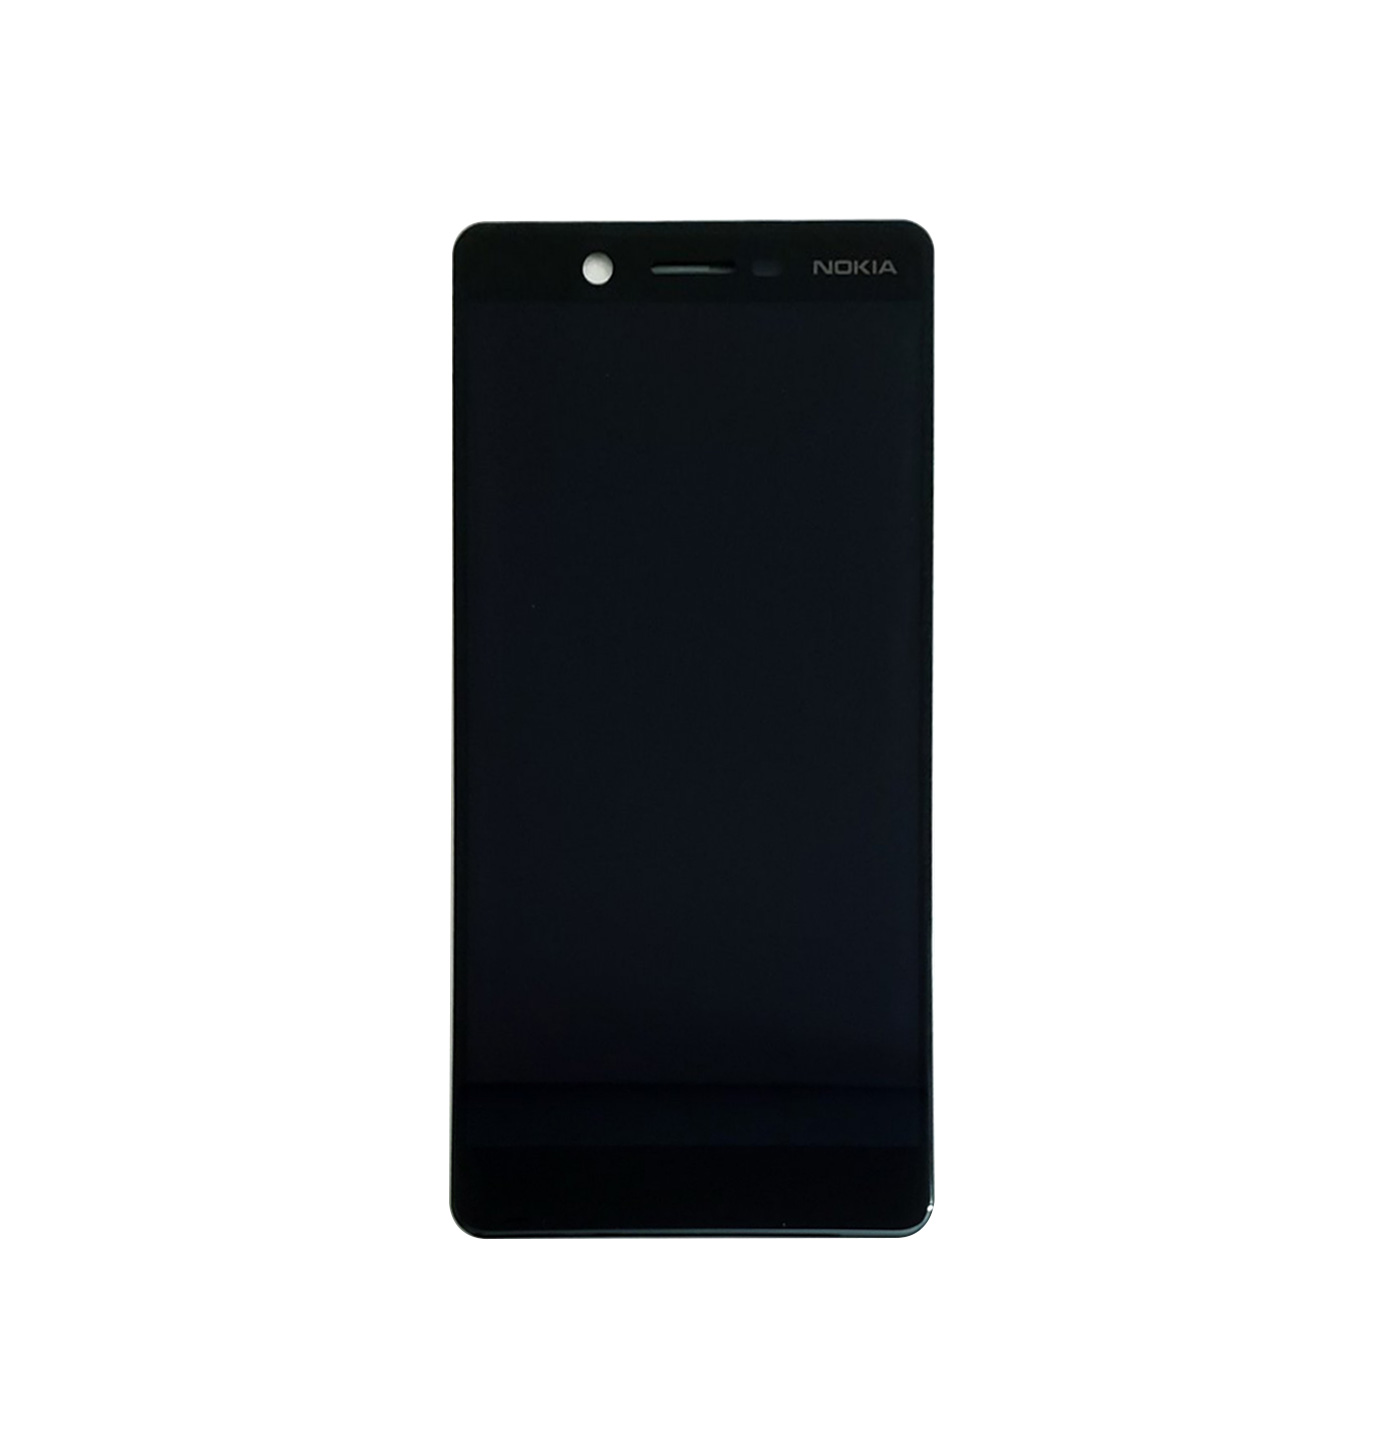 Màn hình Nokia 7 Plus